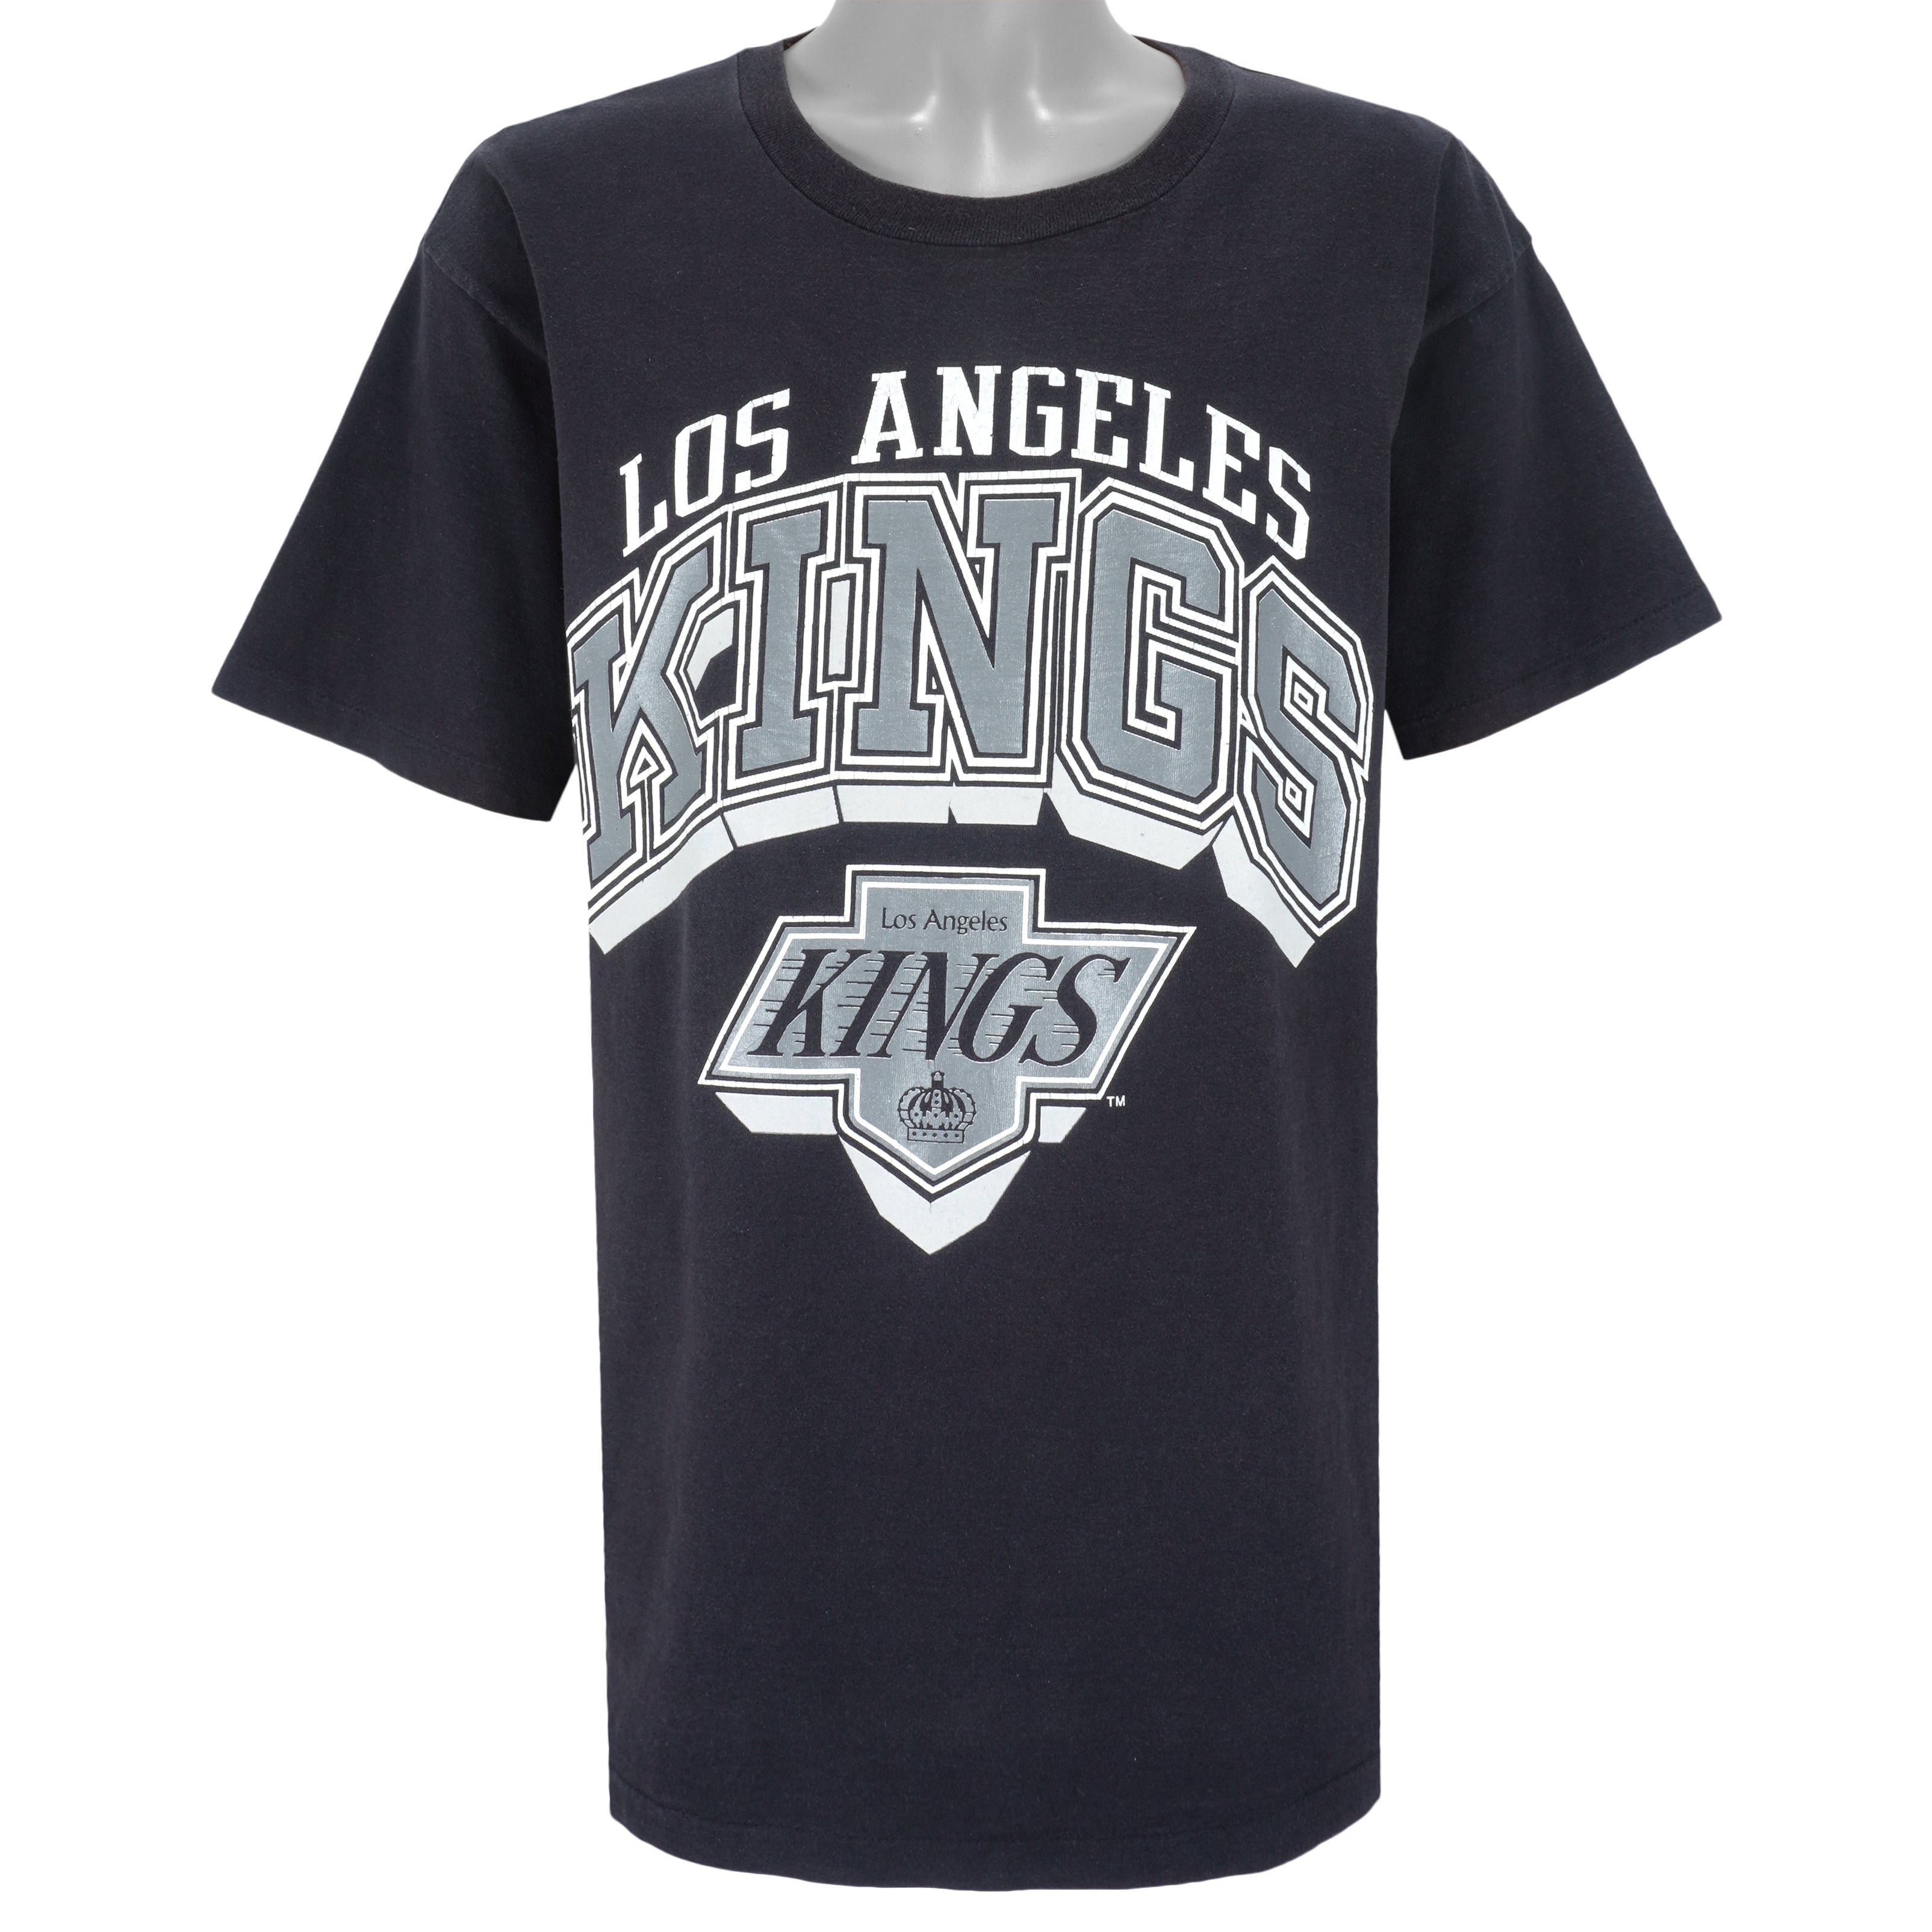 Vintage Los Angeles Kings Sweatshirt 90s XL